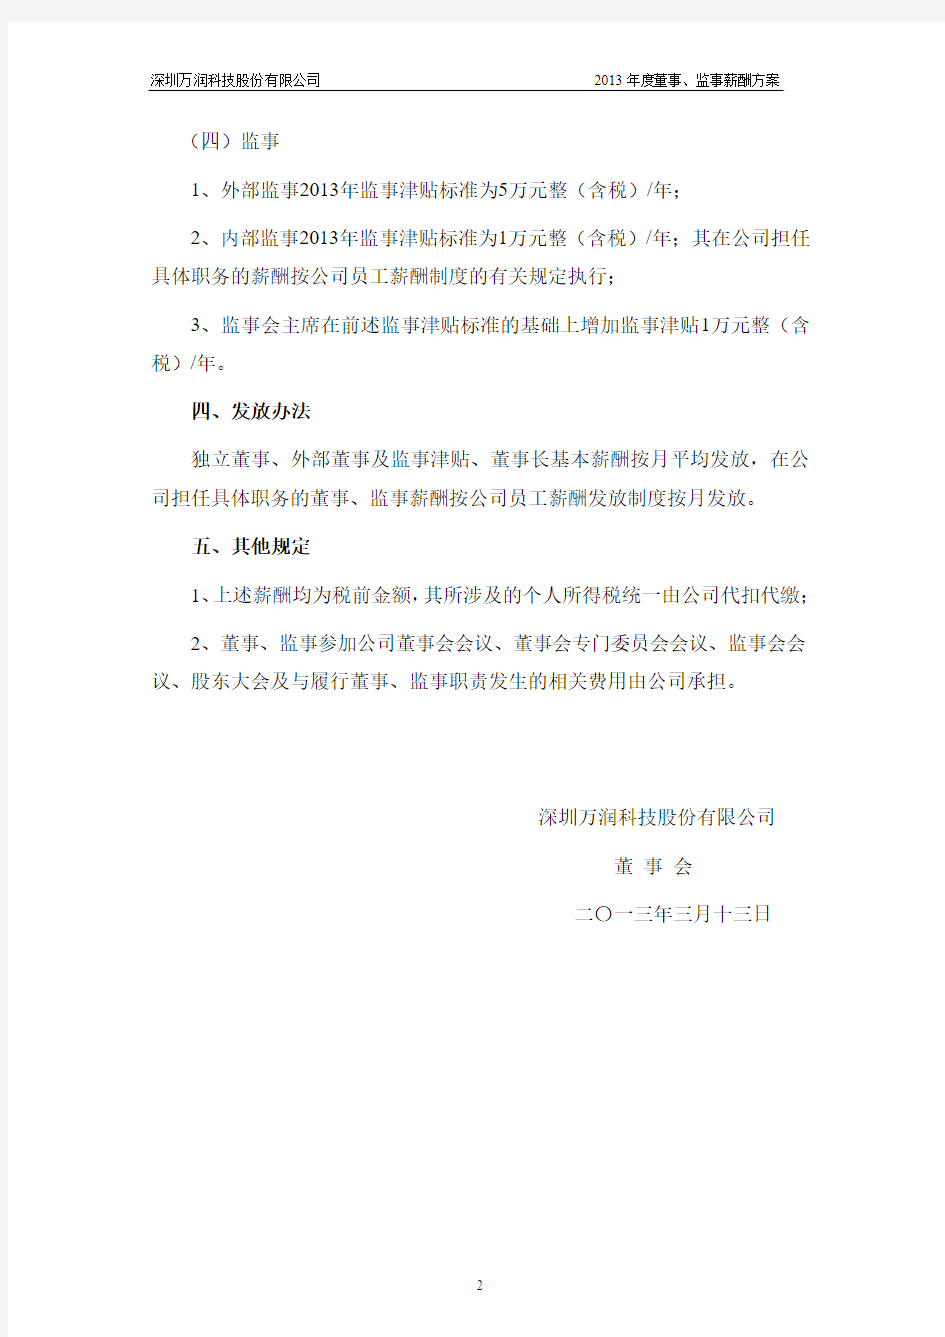 深圳万润科技股份有限公司2013 年度董事、监事薪酬方案